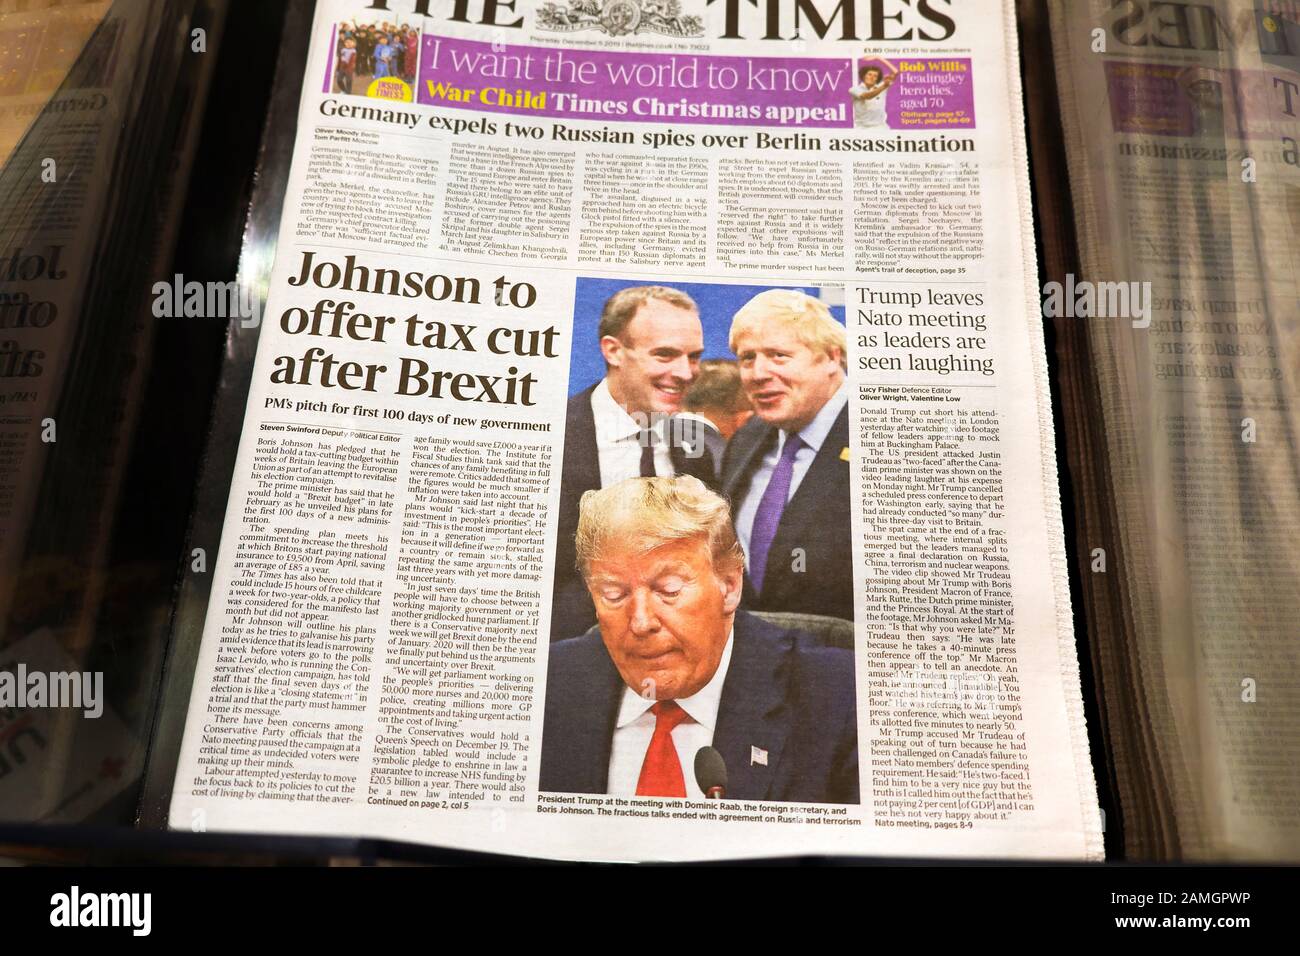 Auf der Titelseite Der Zeitung "Times" wird "Johnson, um Steuersenkung anzubieten, nachdem Brexit" "Trump das Nato-Treffen verlässt, während Führer lachen" London 2019 gesehen werden Stockfoto